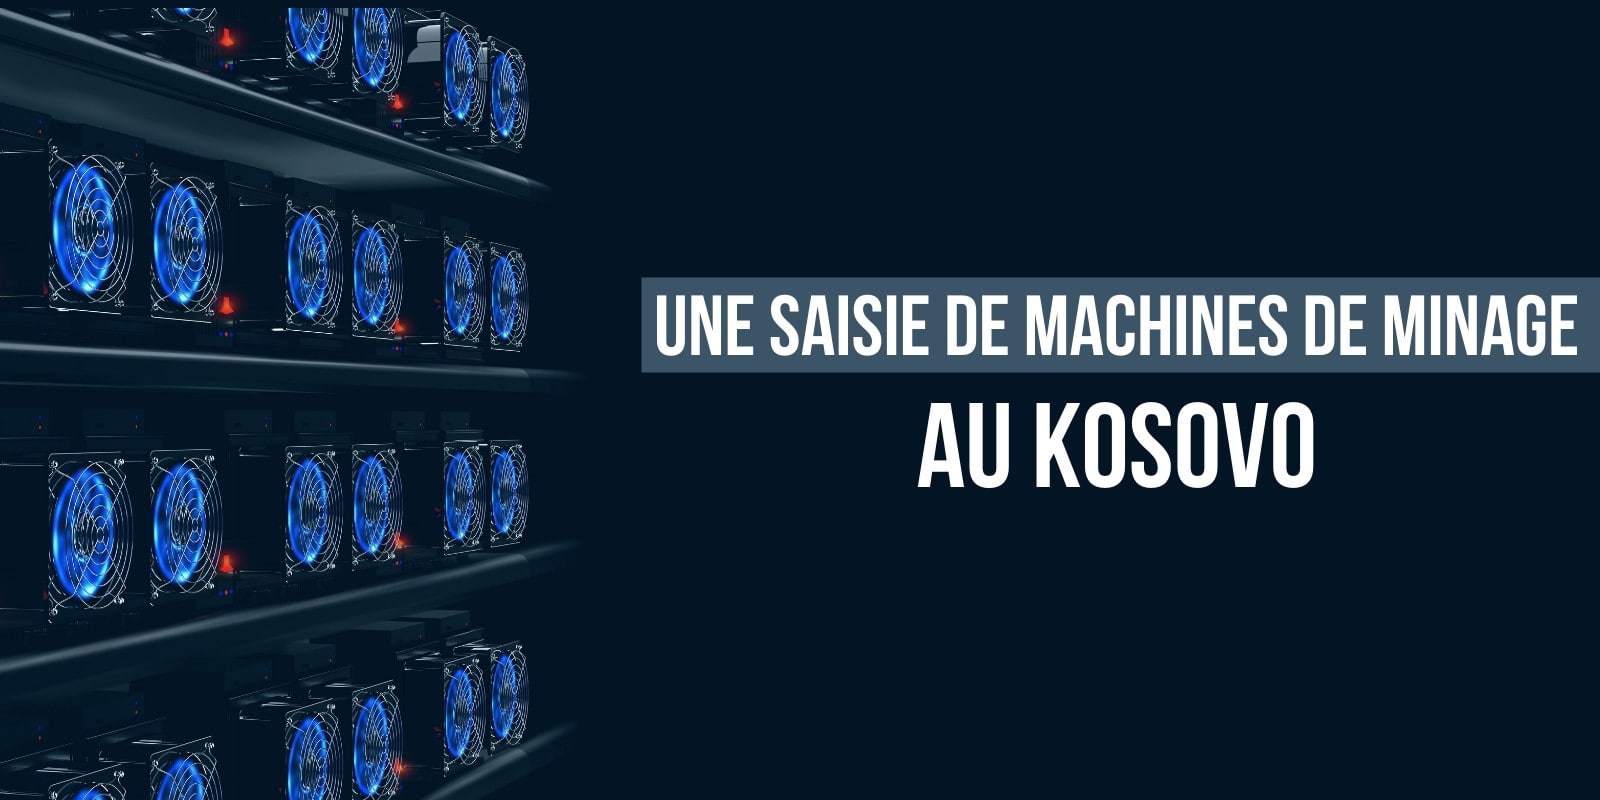 Les autorités du Kosovo saisissent plusieurs centaines de machines de minage